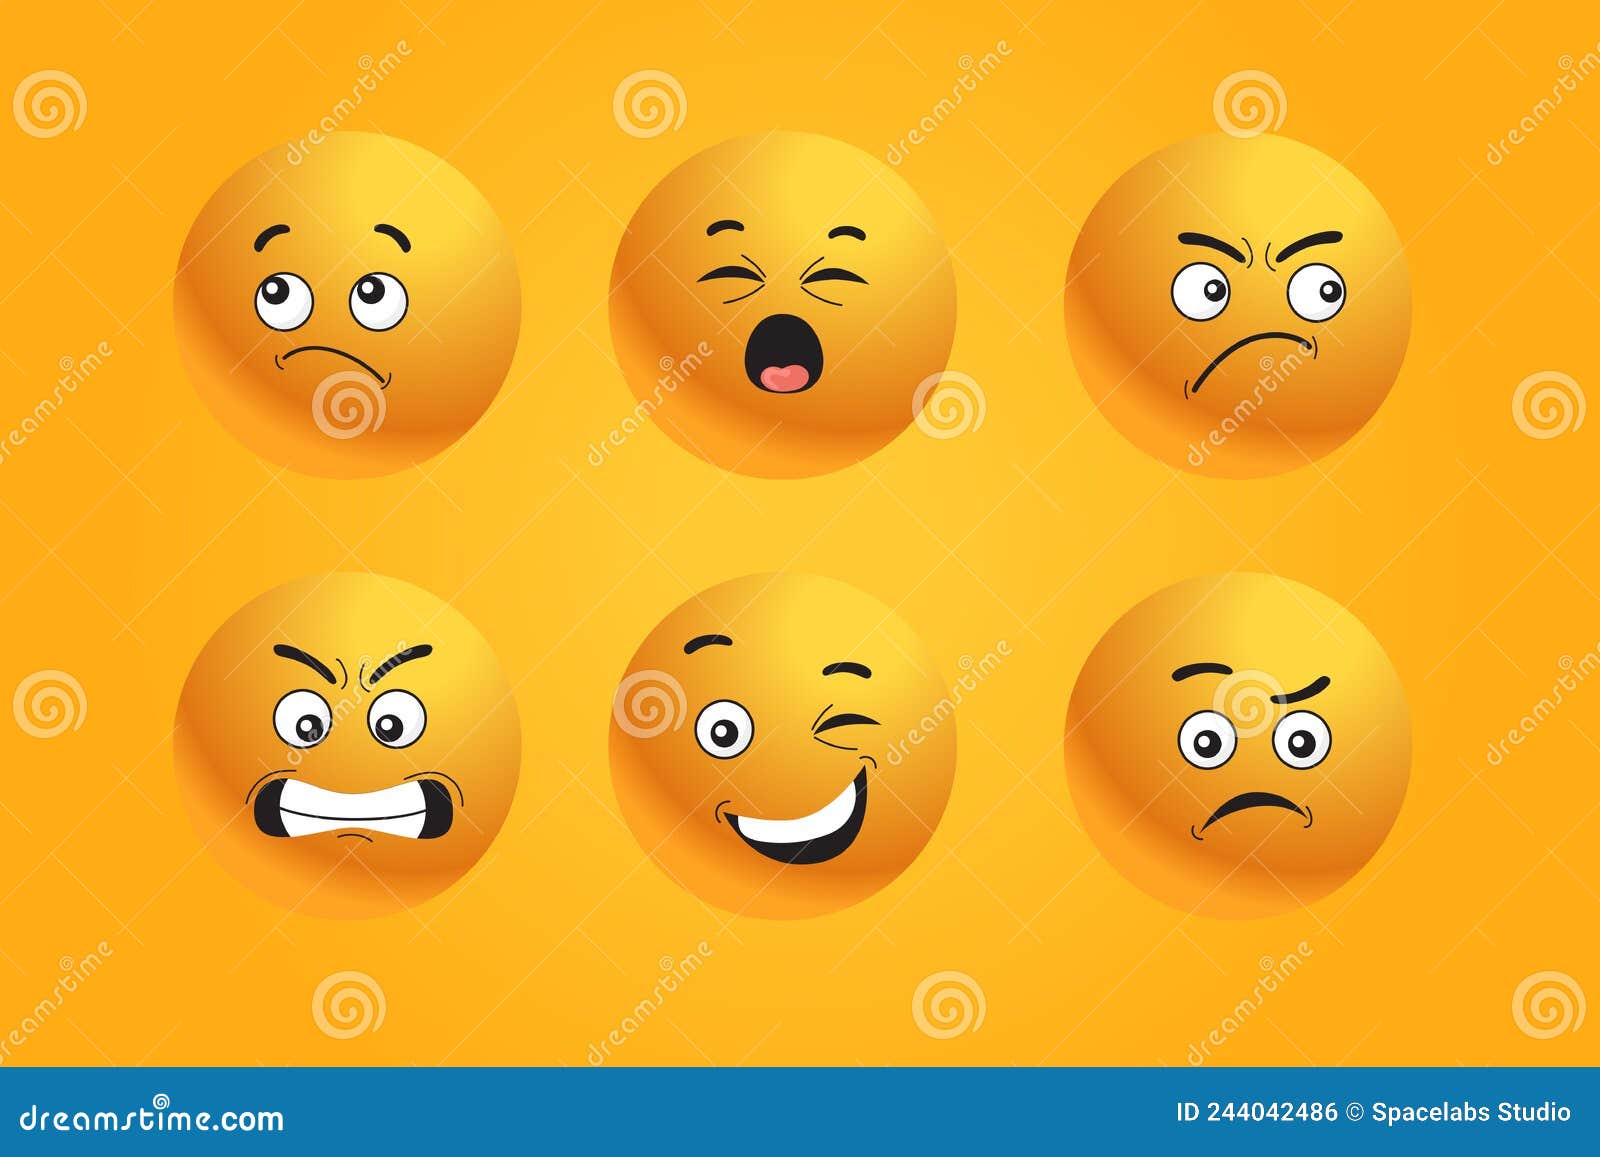 smiley emoticon icon yellow expresion face emoji